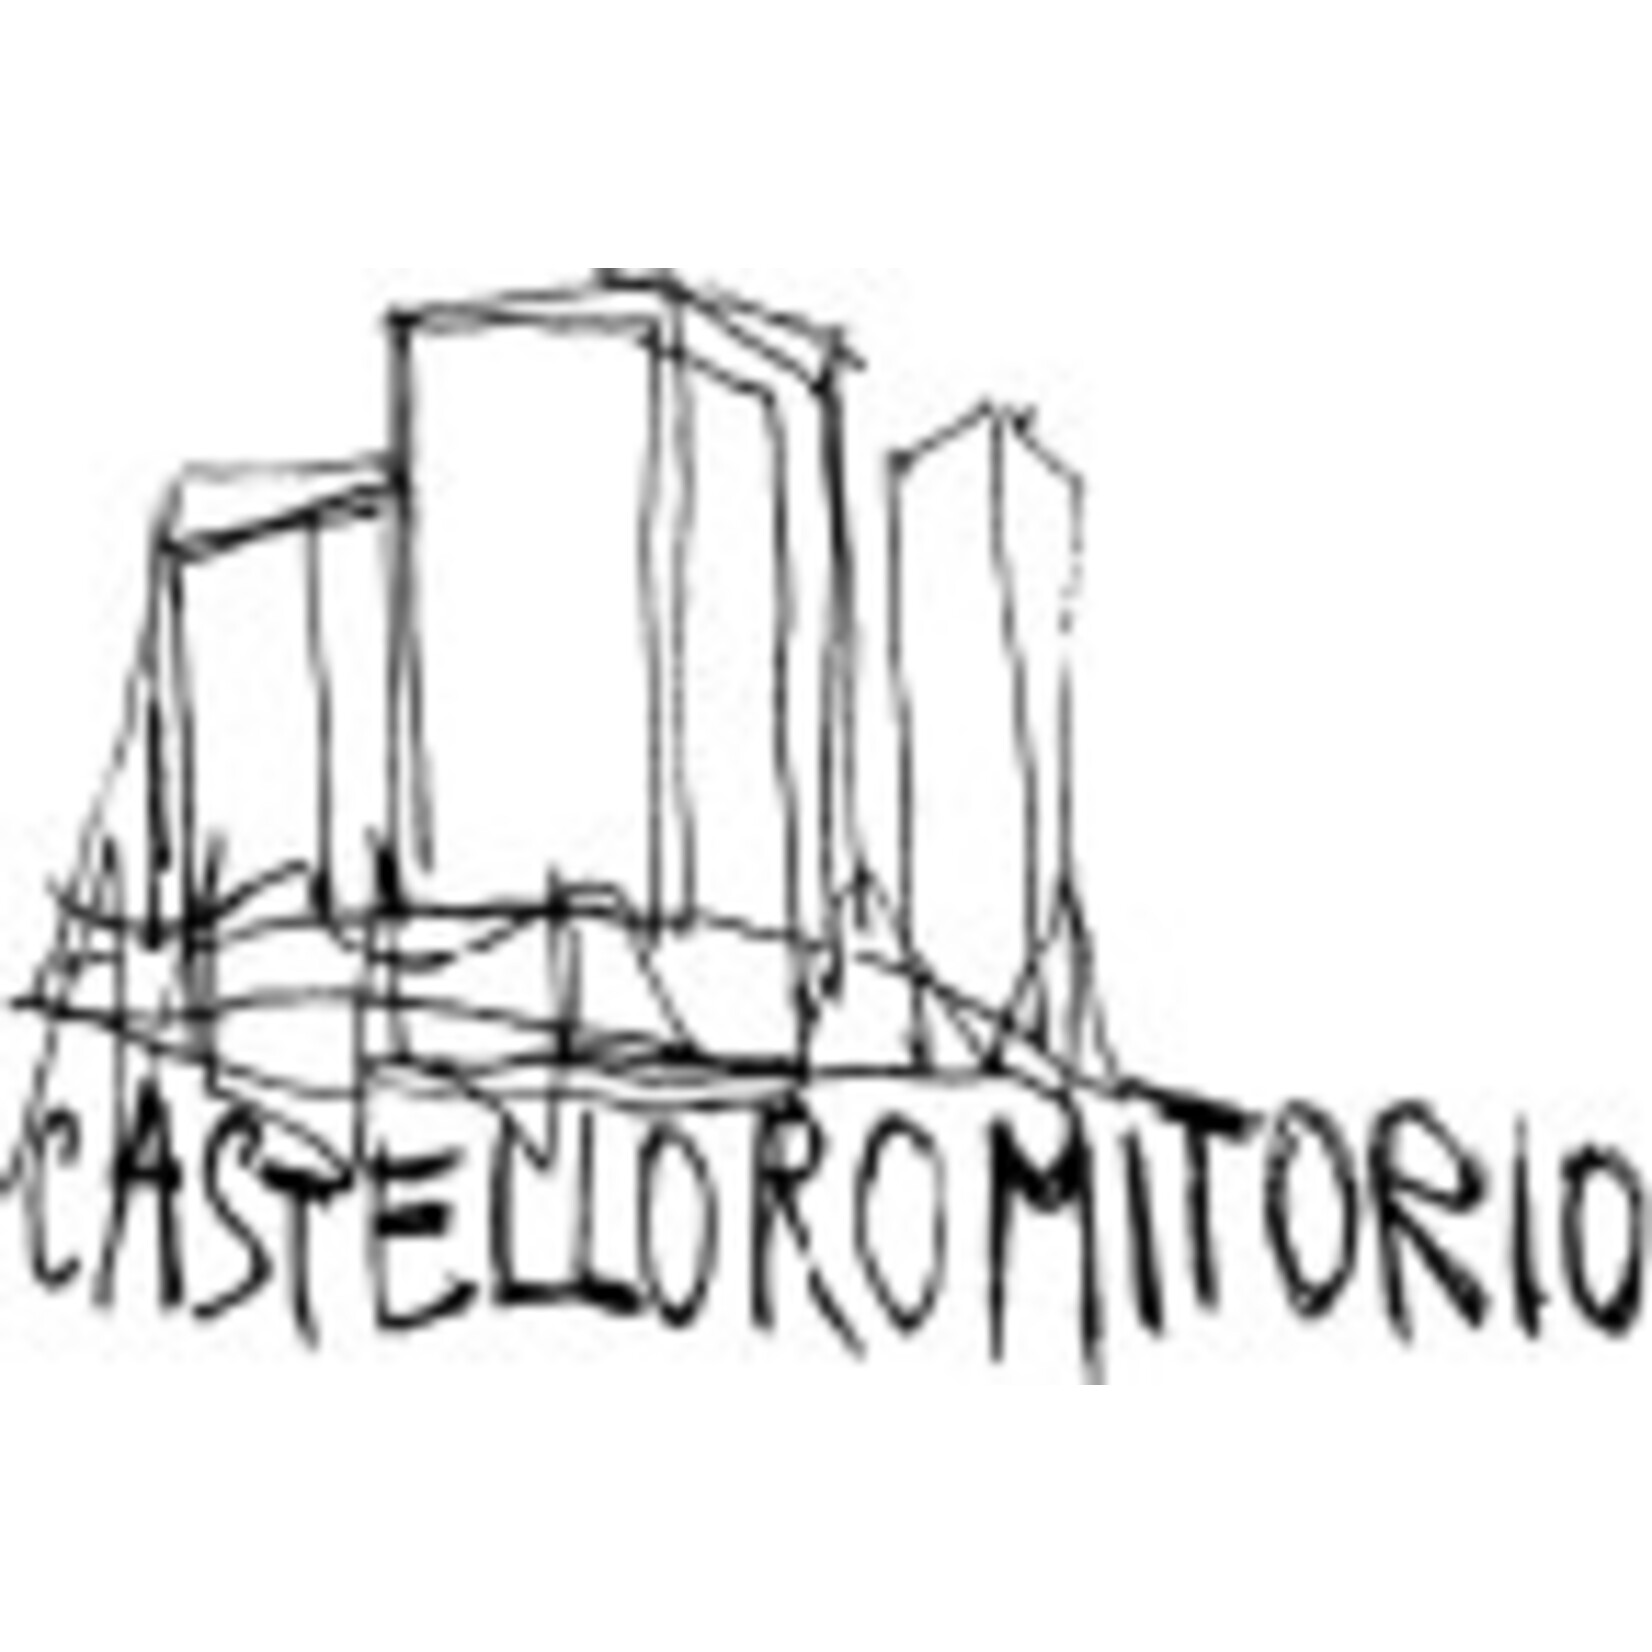 Castello Romitorio Brunello Di Montalcino 2018 Italy